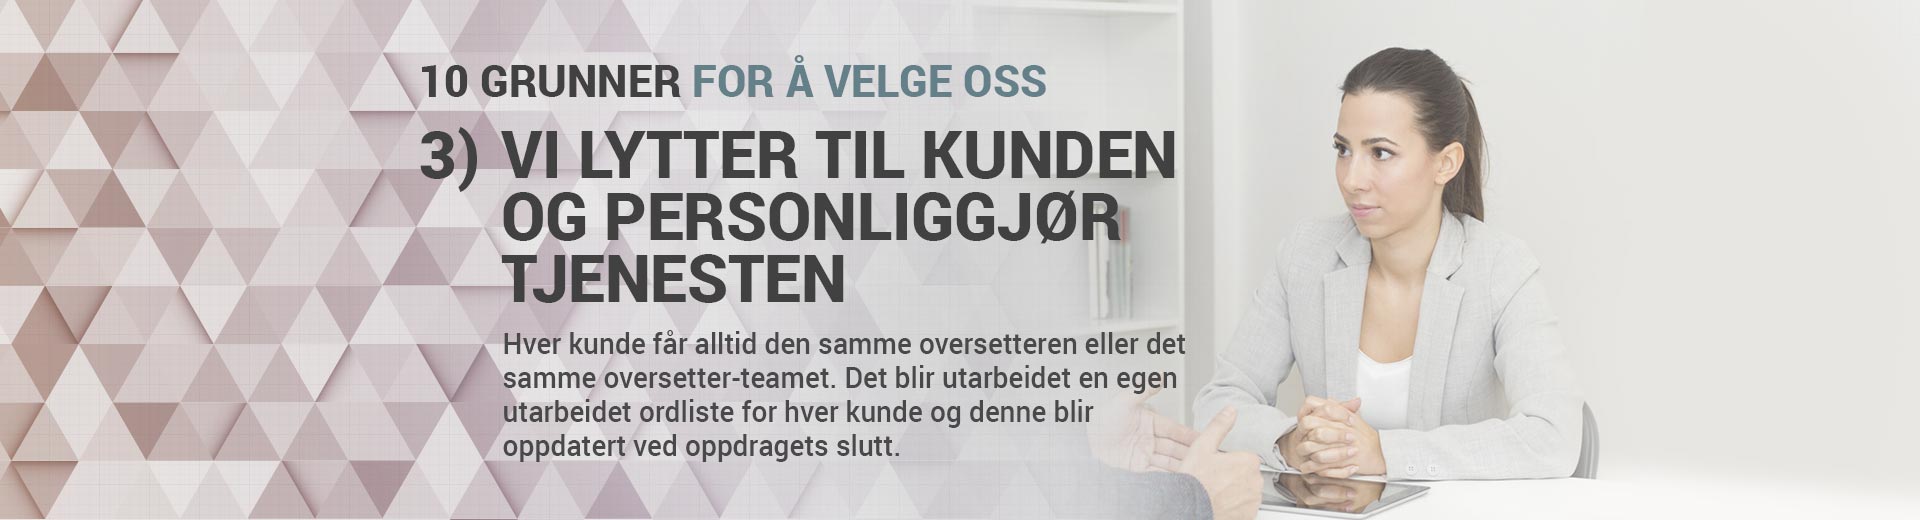 10 GRUNNER FOR Å VELGE OMNIA OVERSETTELSER